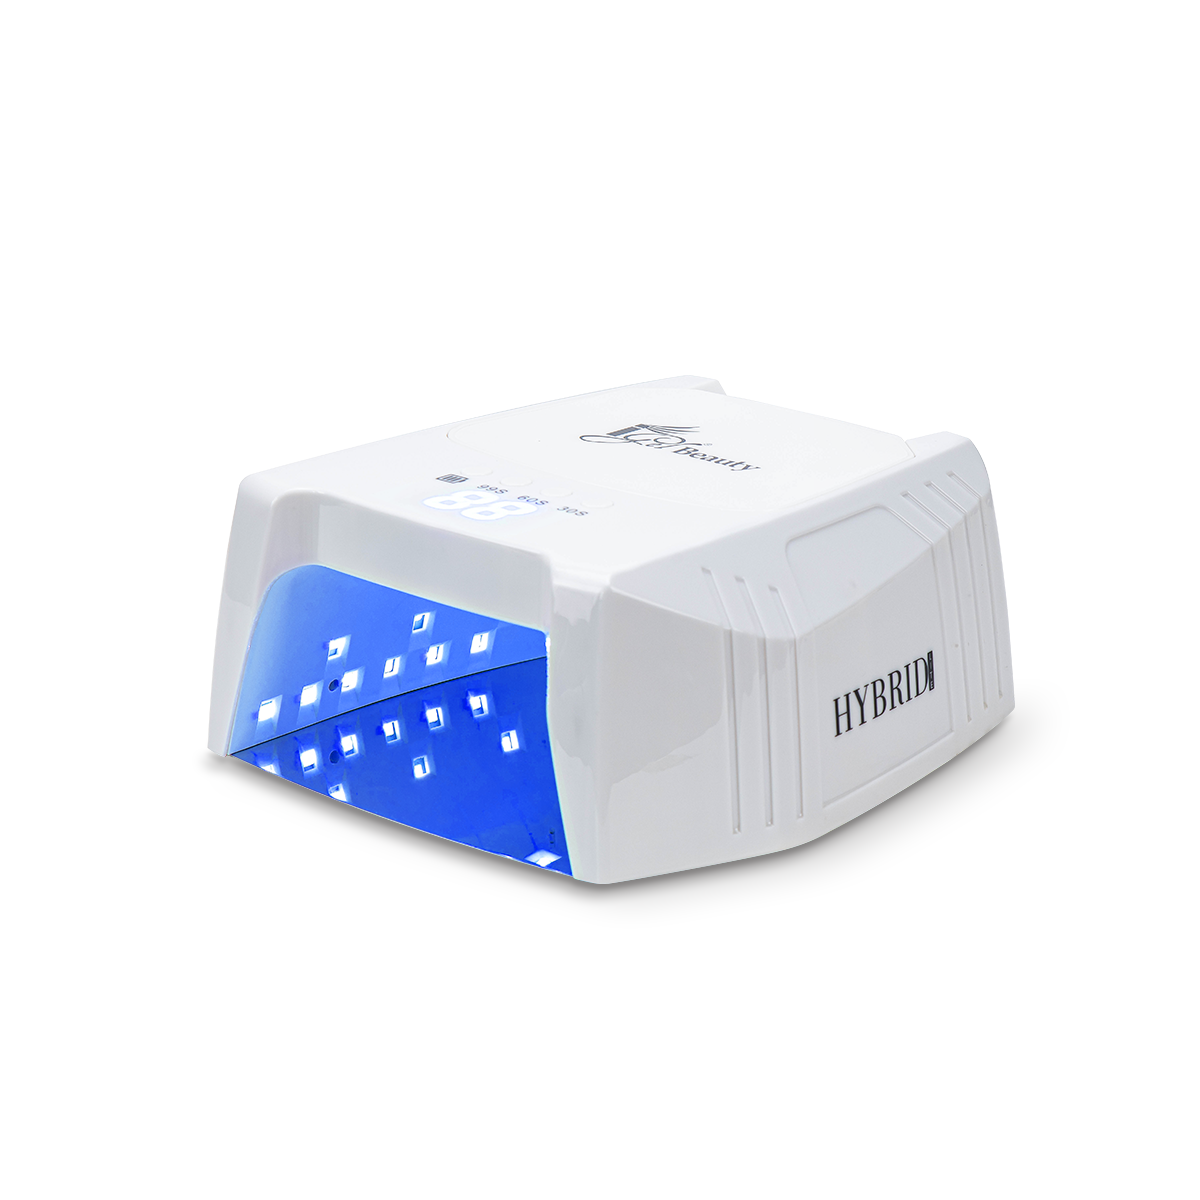 Hybrid Lite UV/LED Lamp – iGel Beauty